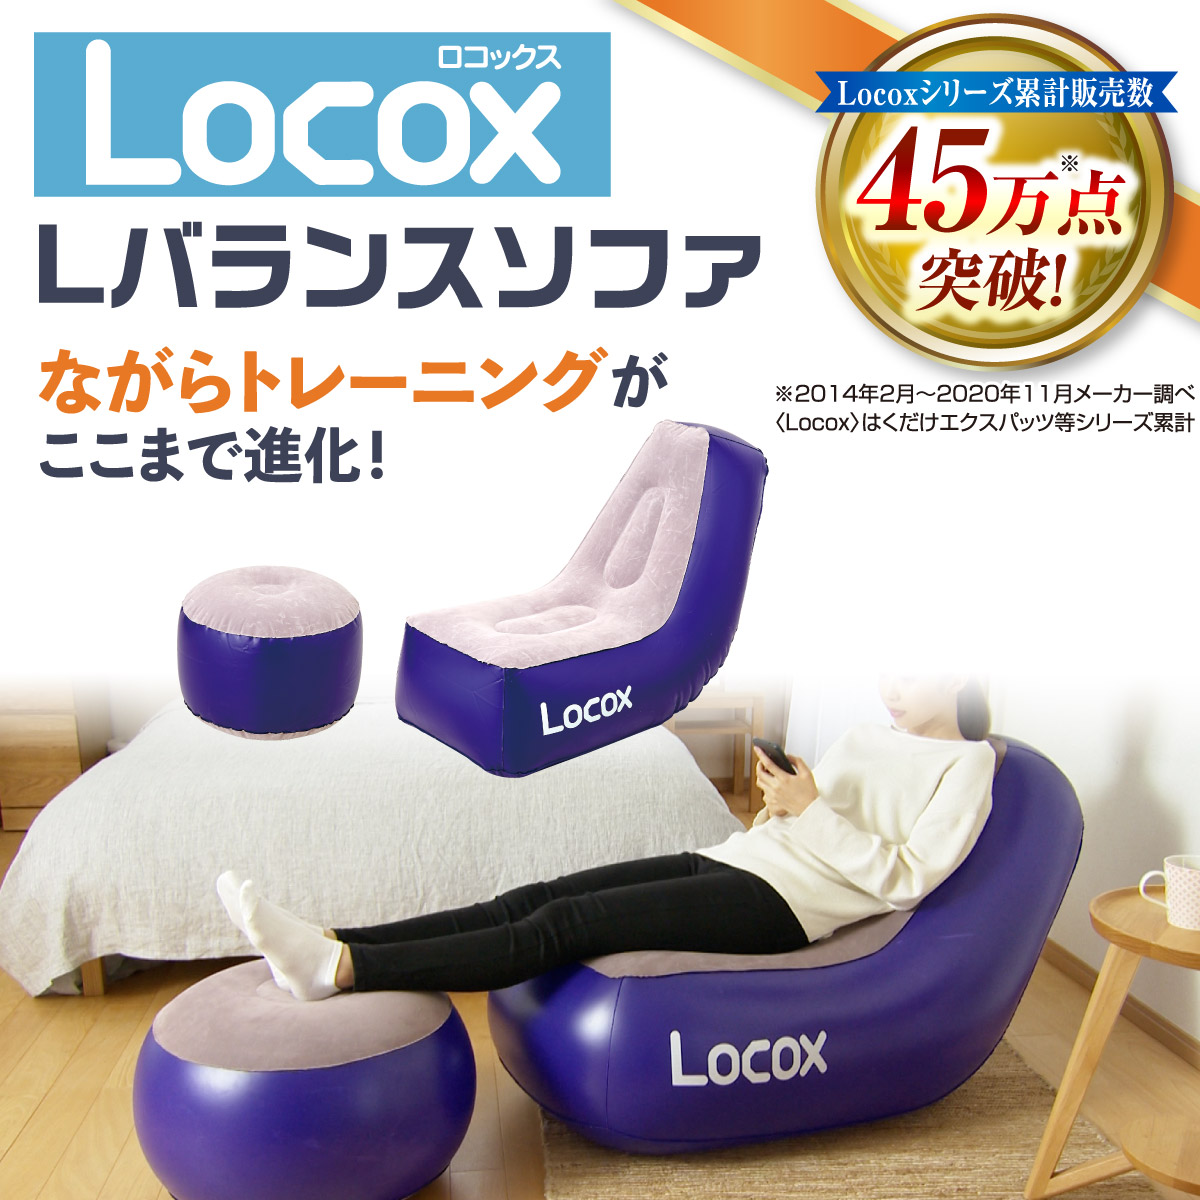 【販売終了】Locox ロコックス Lバランスソファ セット (本体＋オットマン＋エアーポンプ付き) セール